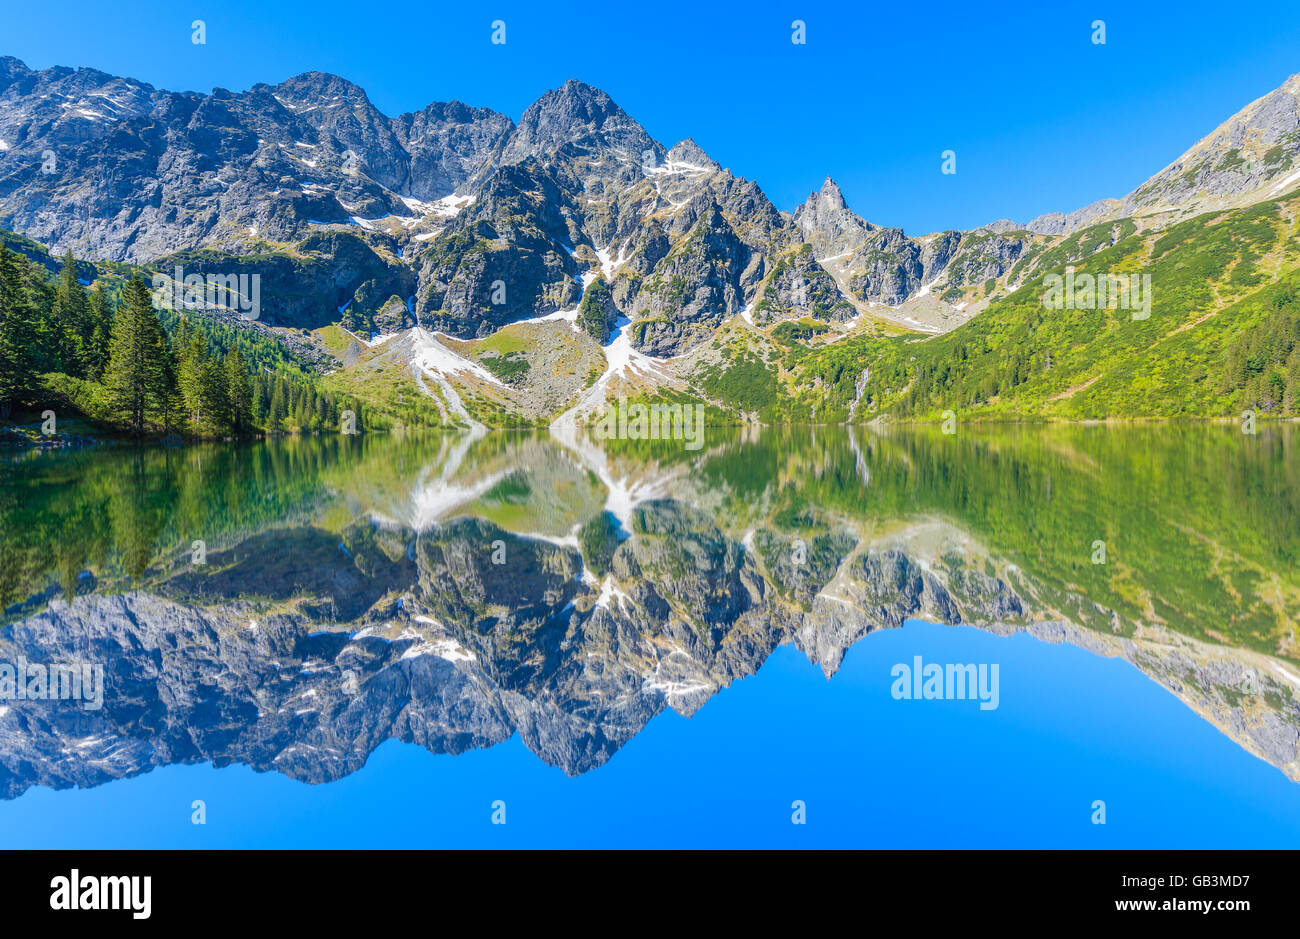 Reflexion von Berggipfeln in schönen Morskie Oko See, Tatra-Gebirge, Polen Stockfoto